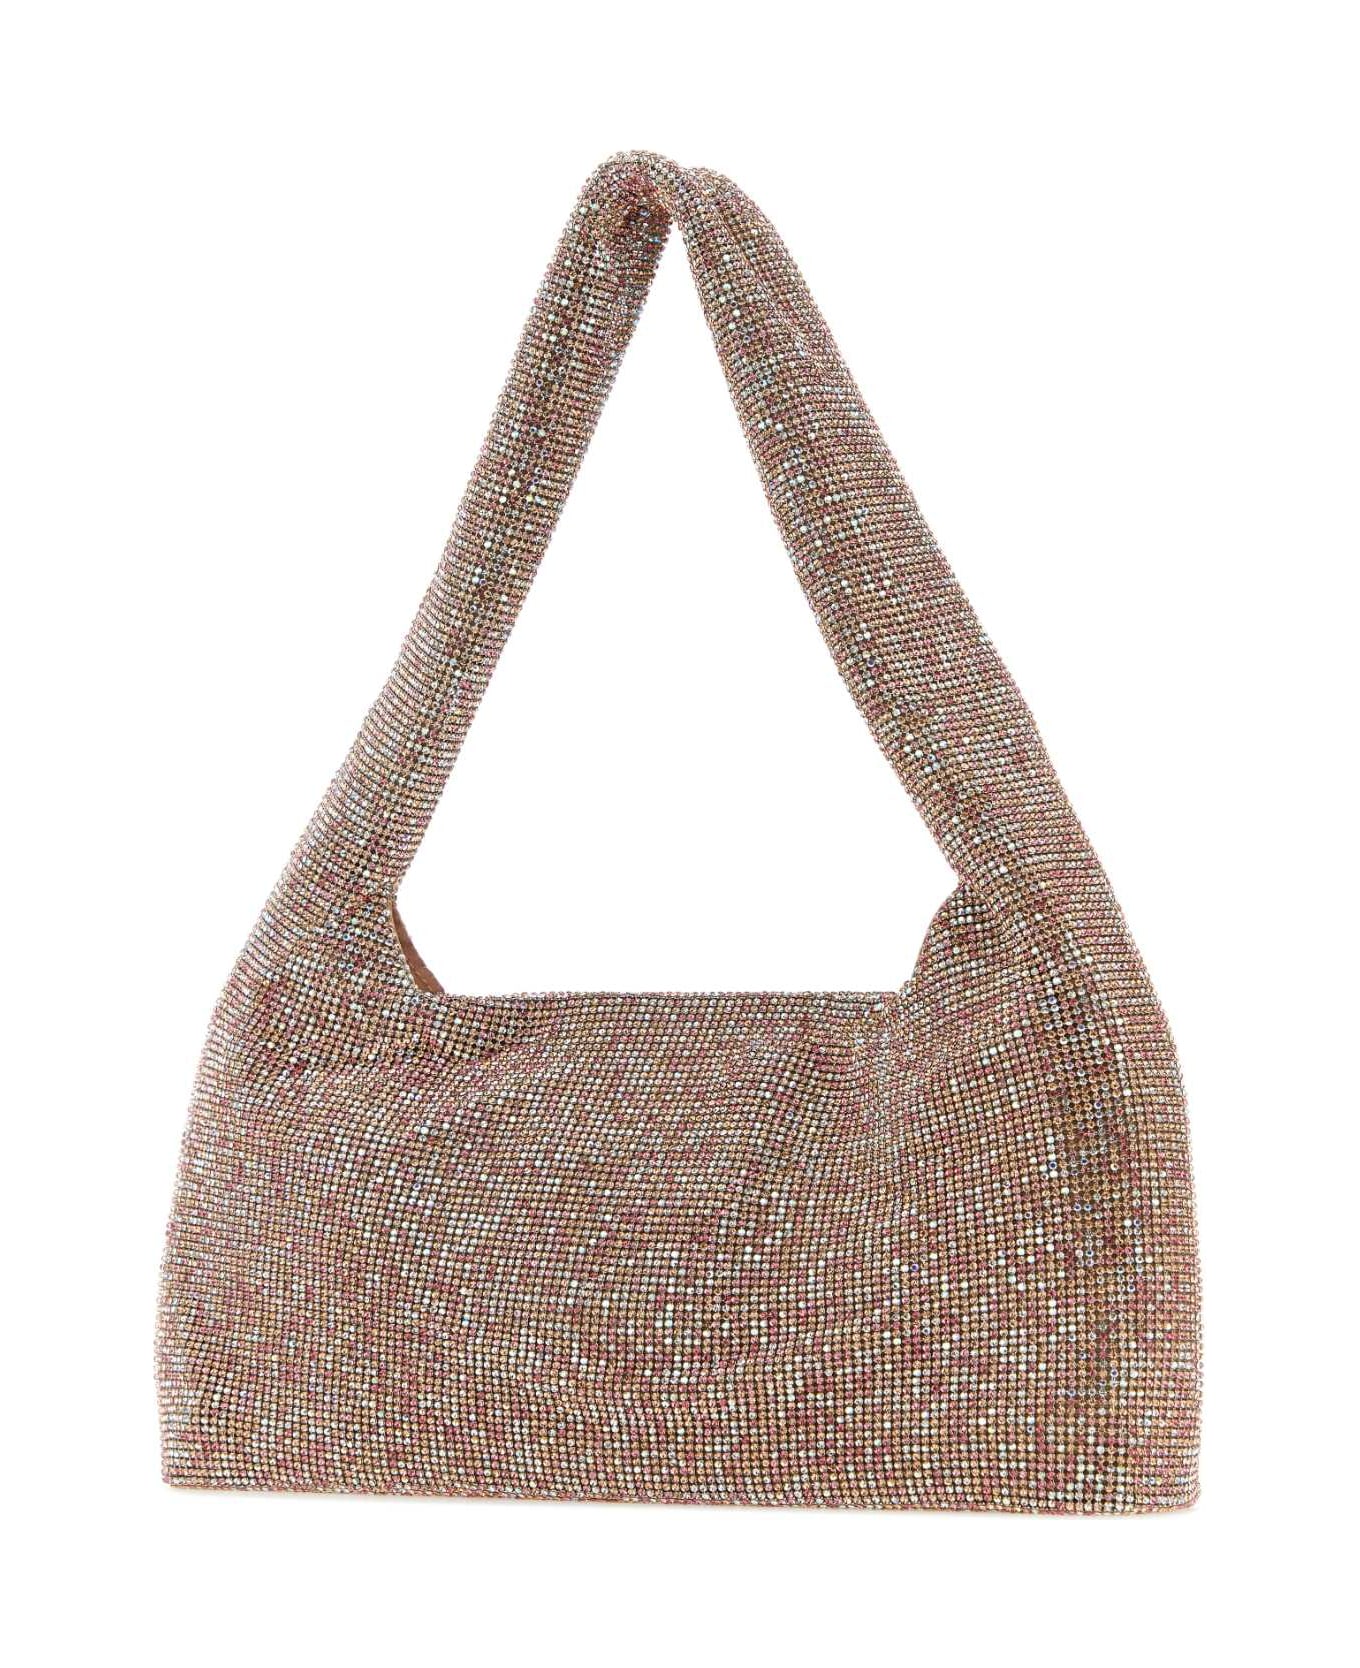 Kara Powder Pink Rhinestones Handbag - PINKPIXEL